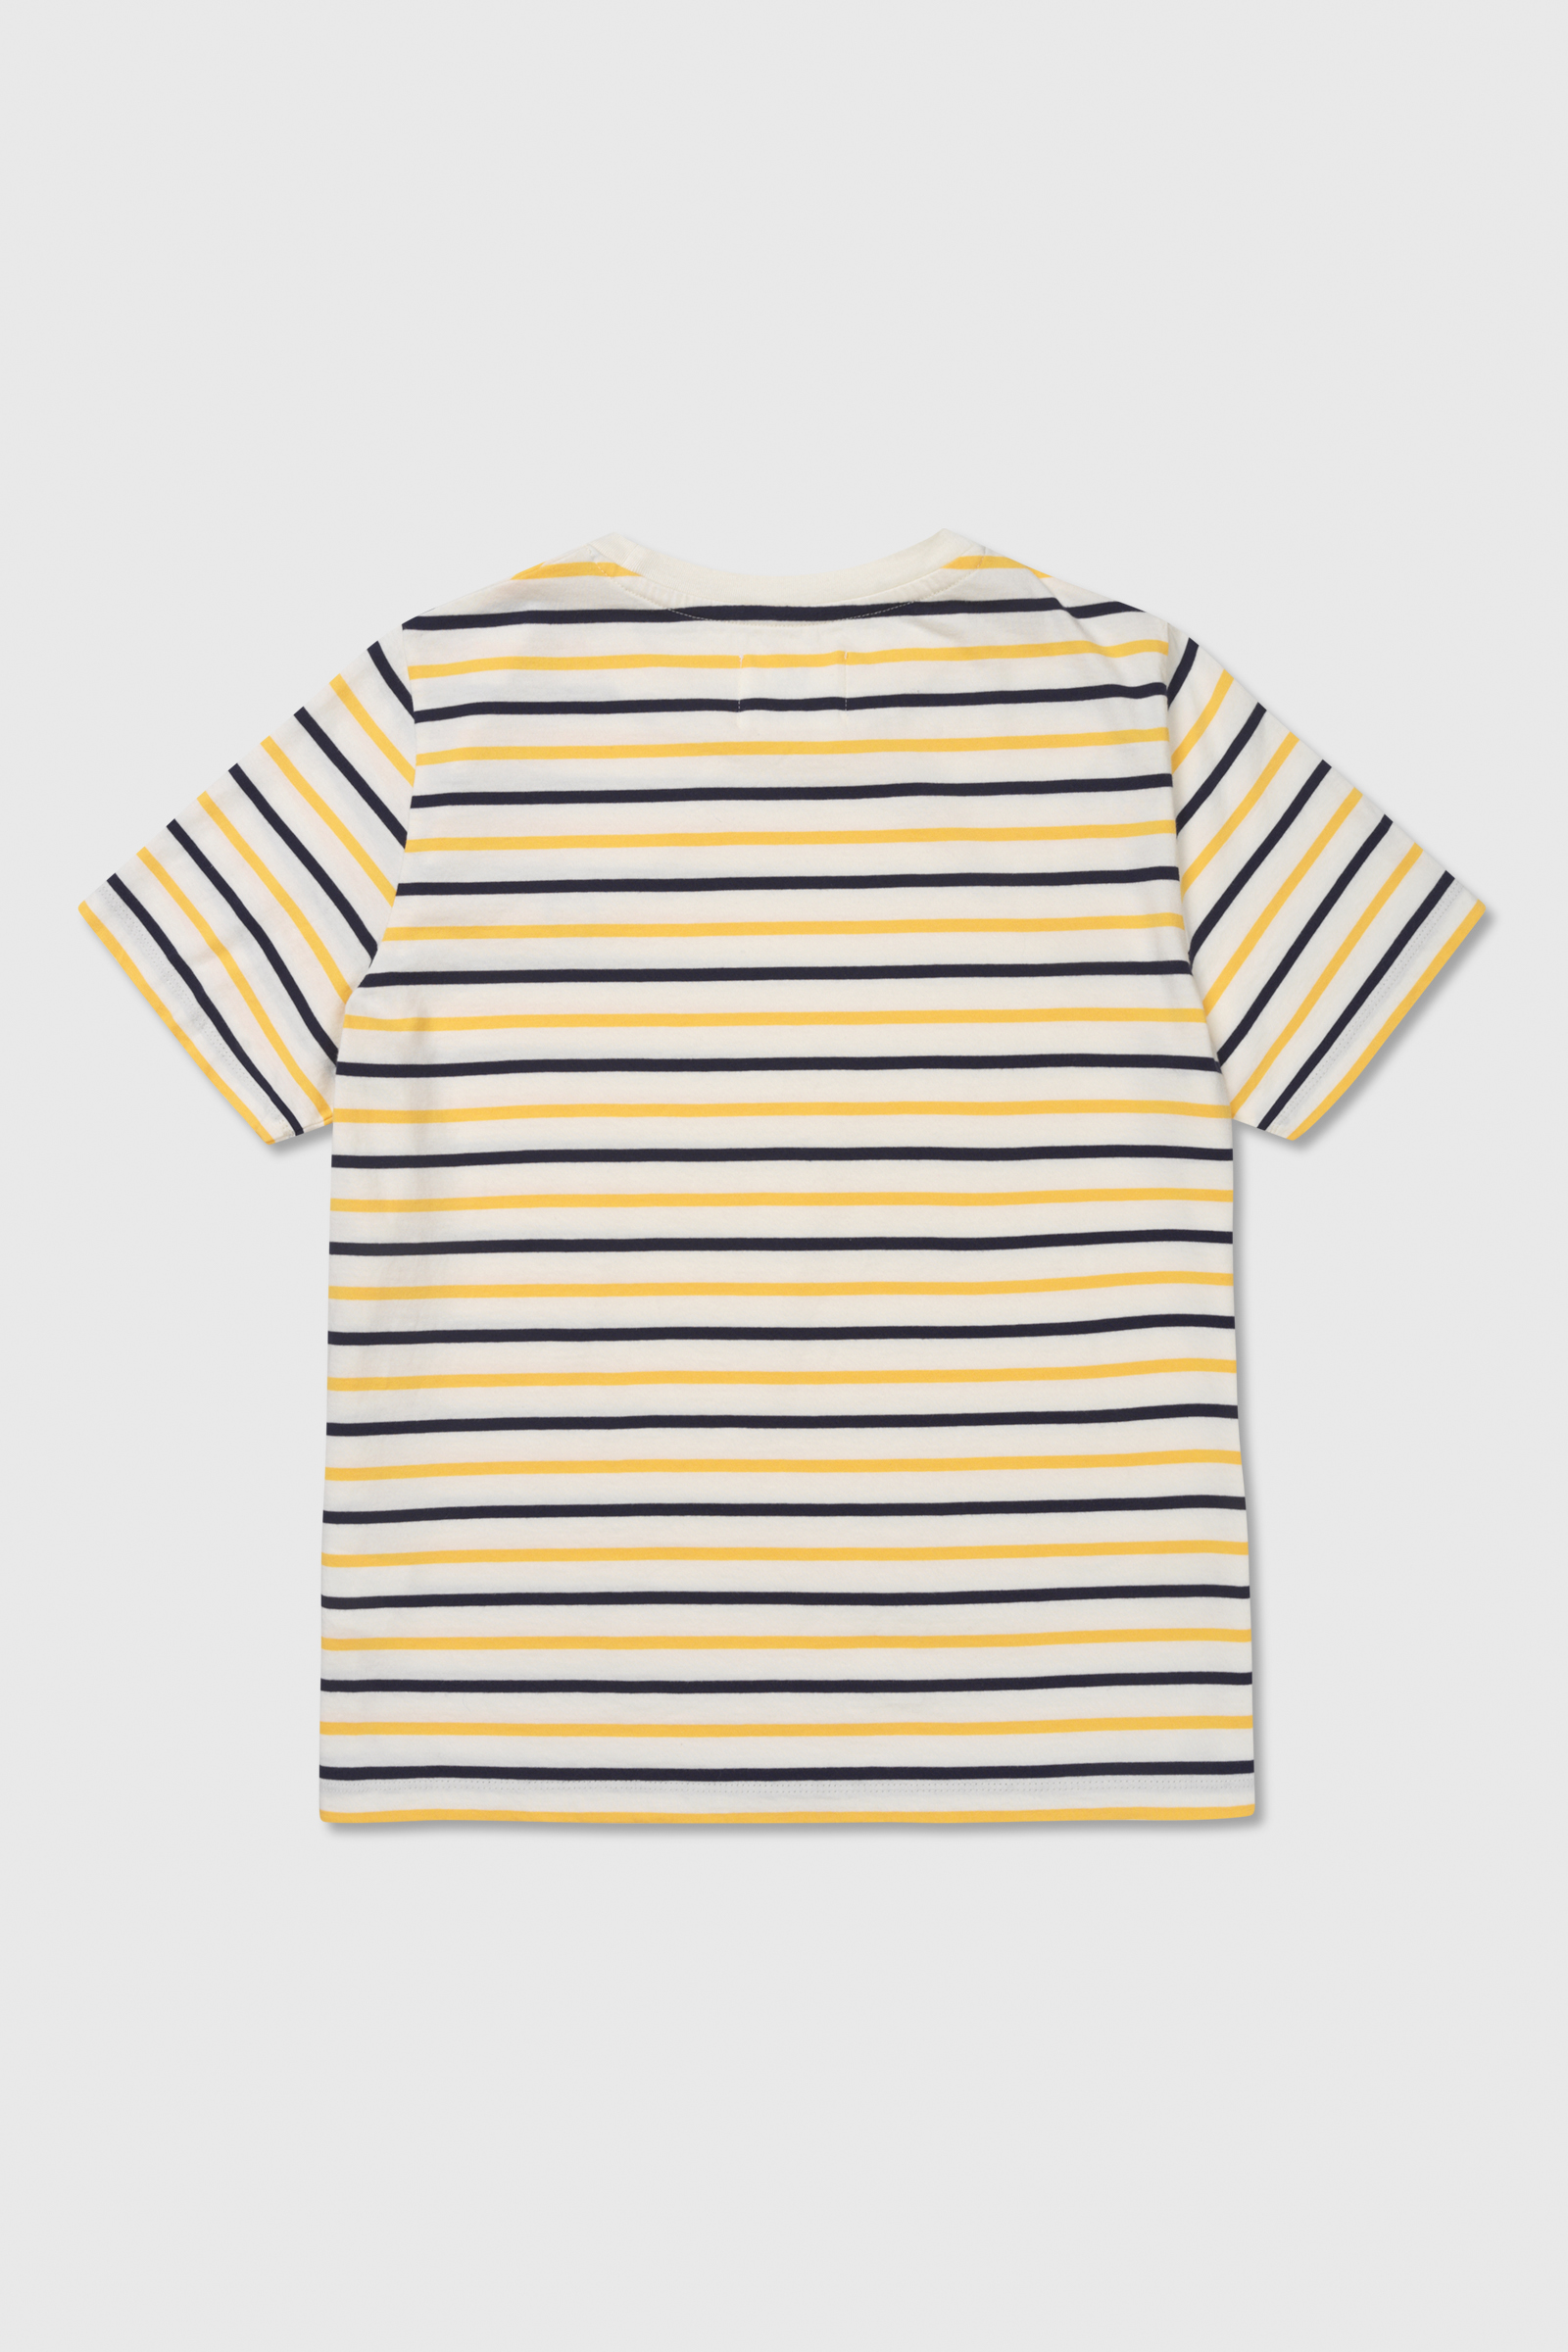  Double A Mia T-shirt, Off White/Yellow Stripes, S